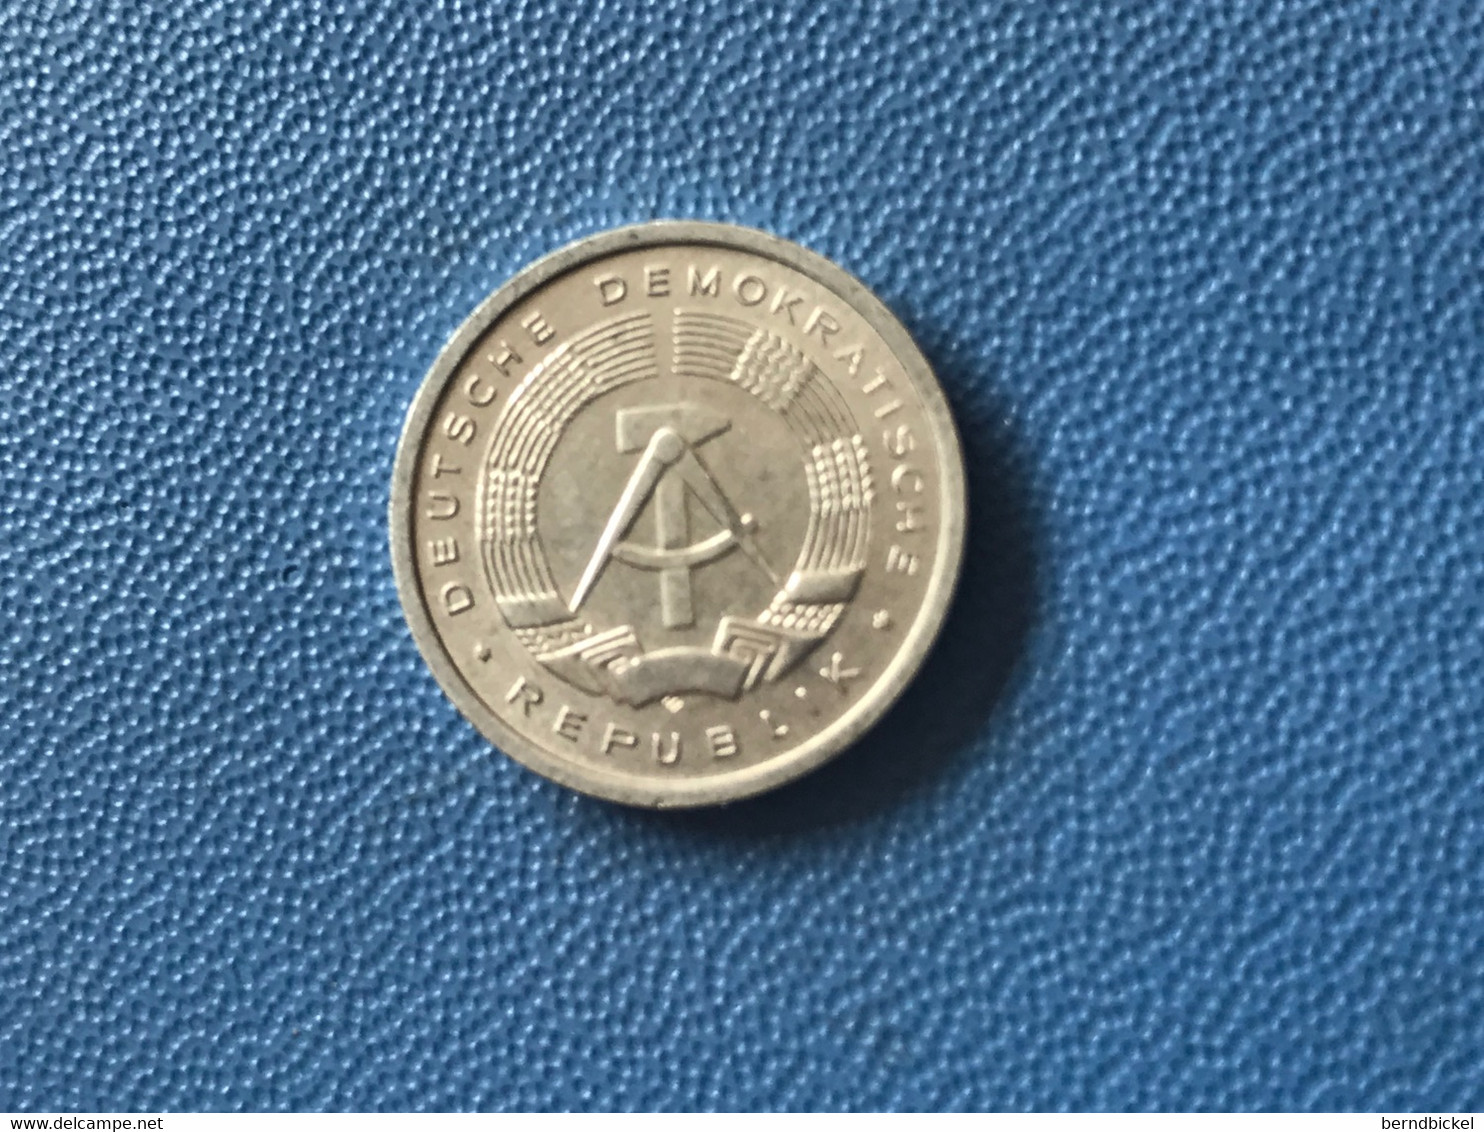 Münze Münzen Umlaufmünze Deutschland DDR 1 Pfennig 1983 - 1 Pfennig